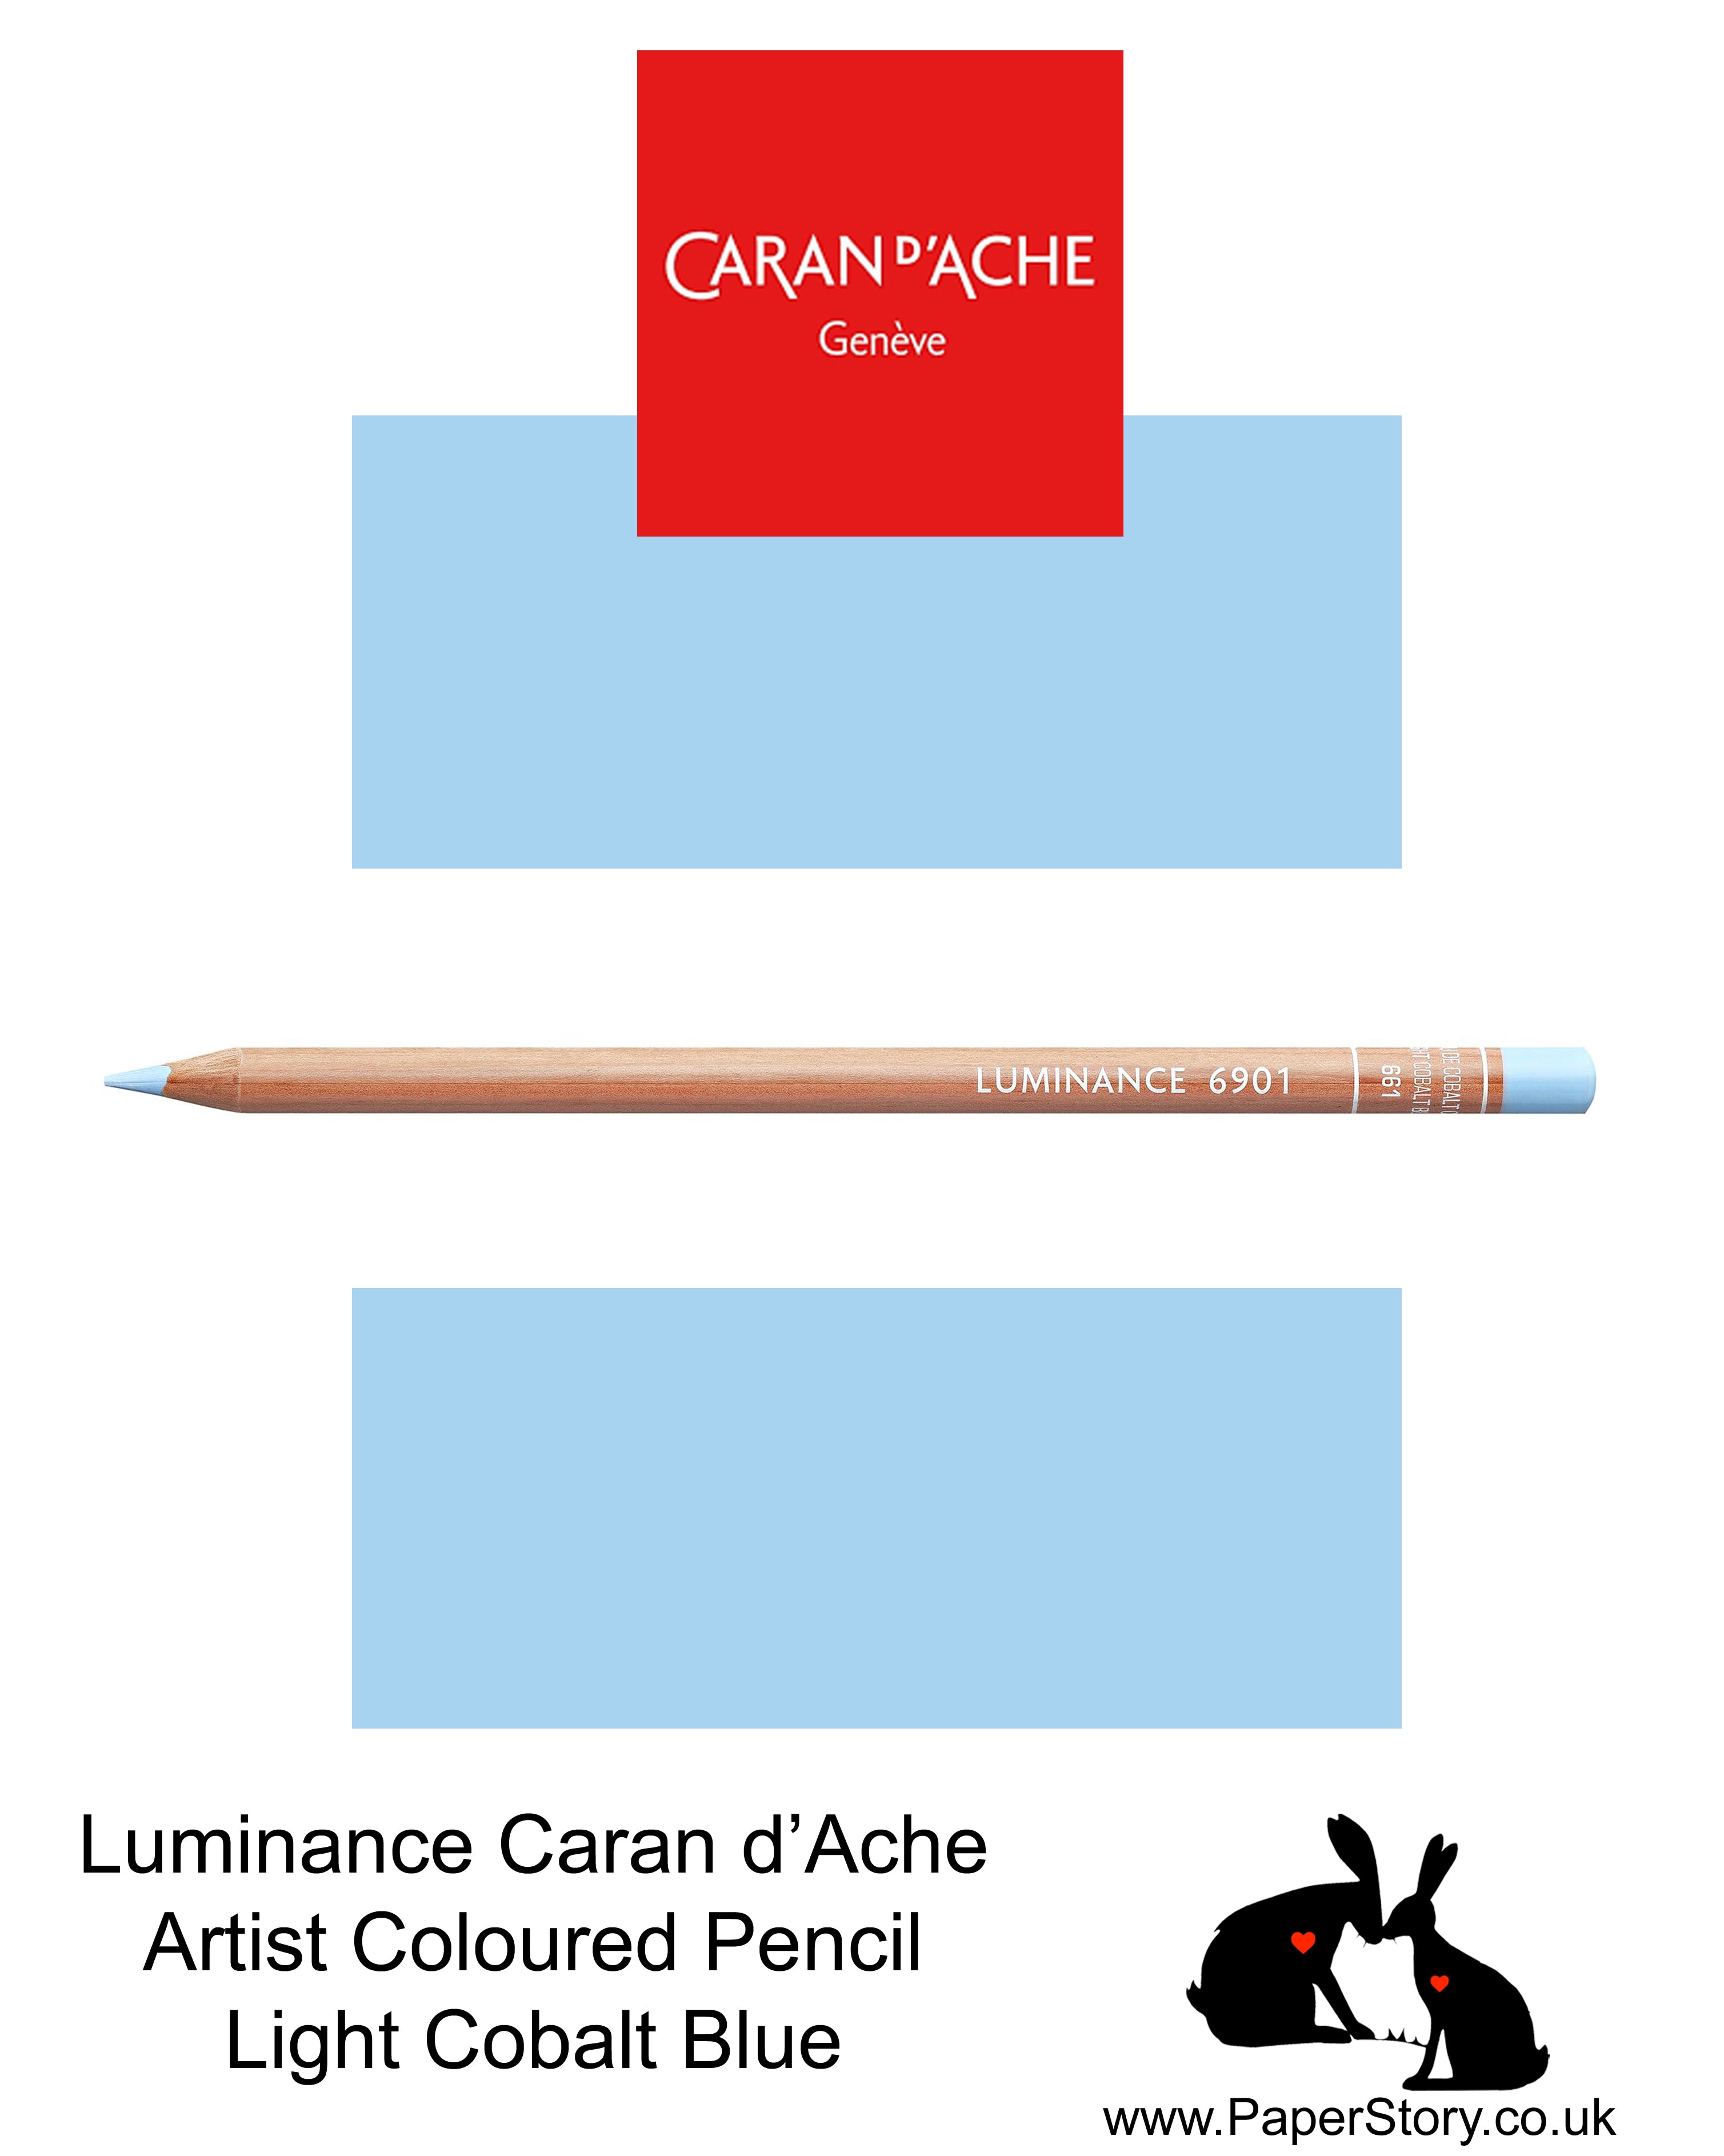 Caran d'Ache Luminance individual Artist Colour Pencils 6901 Light Cobalt Blue 661